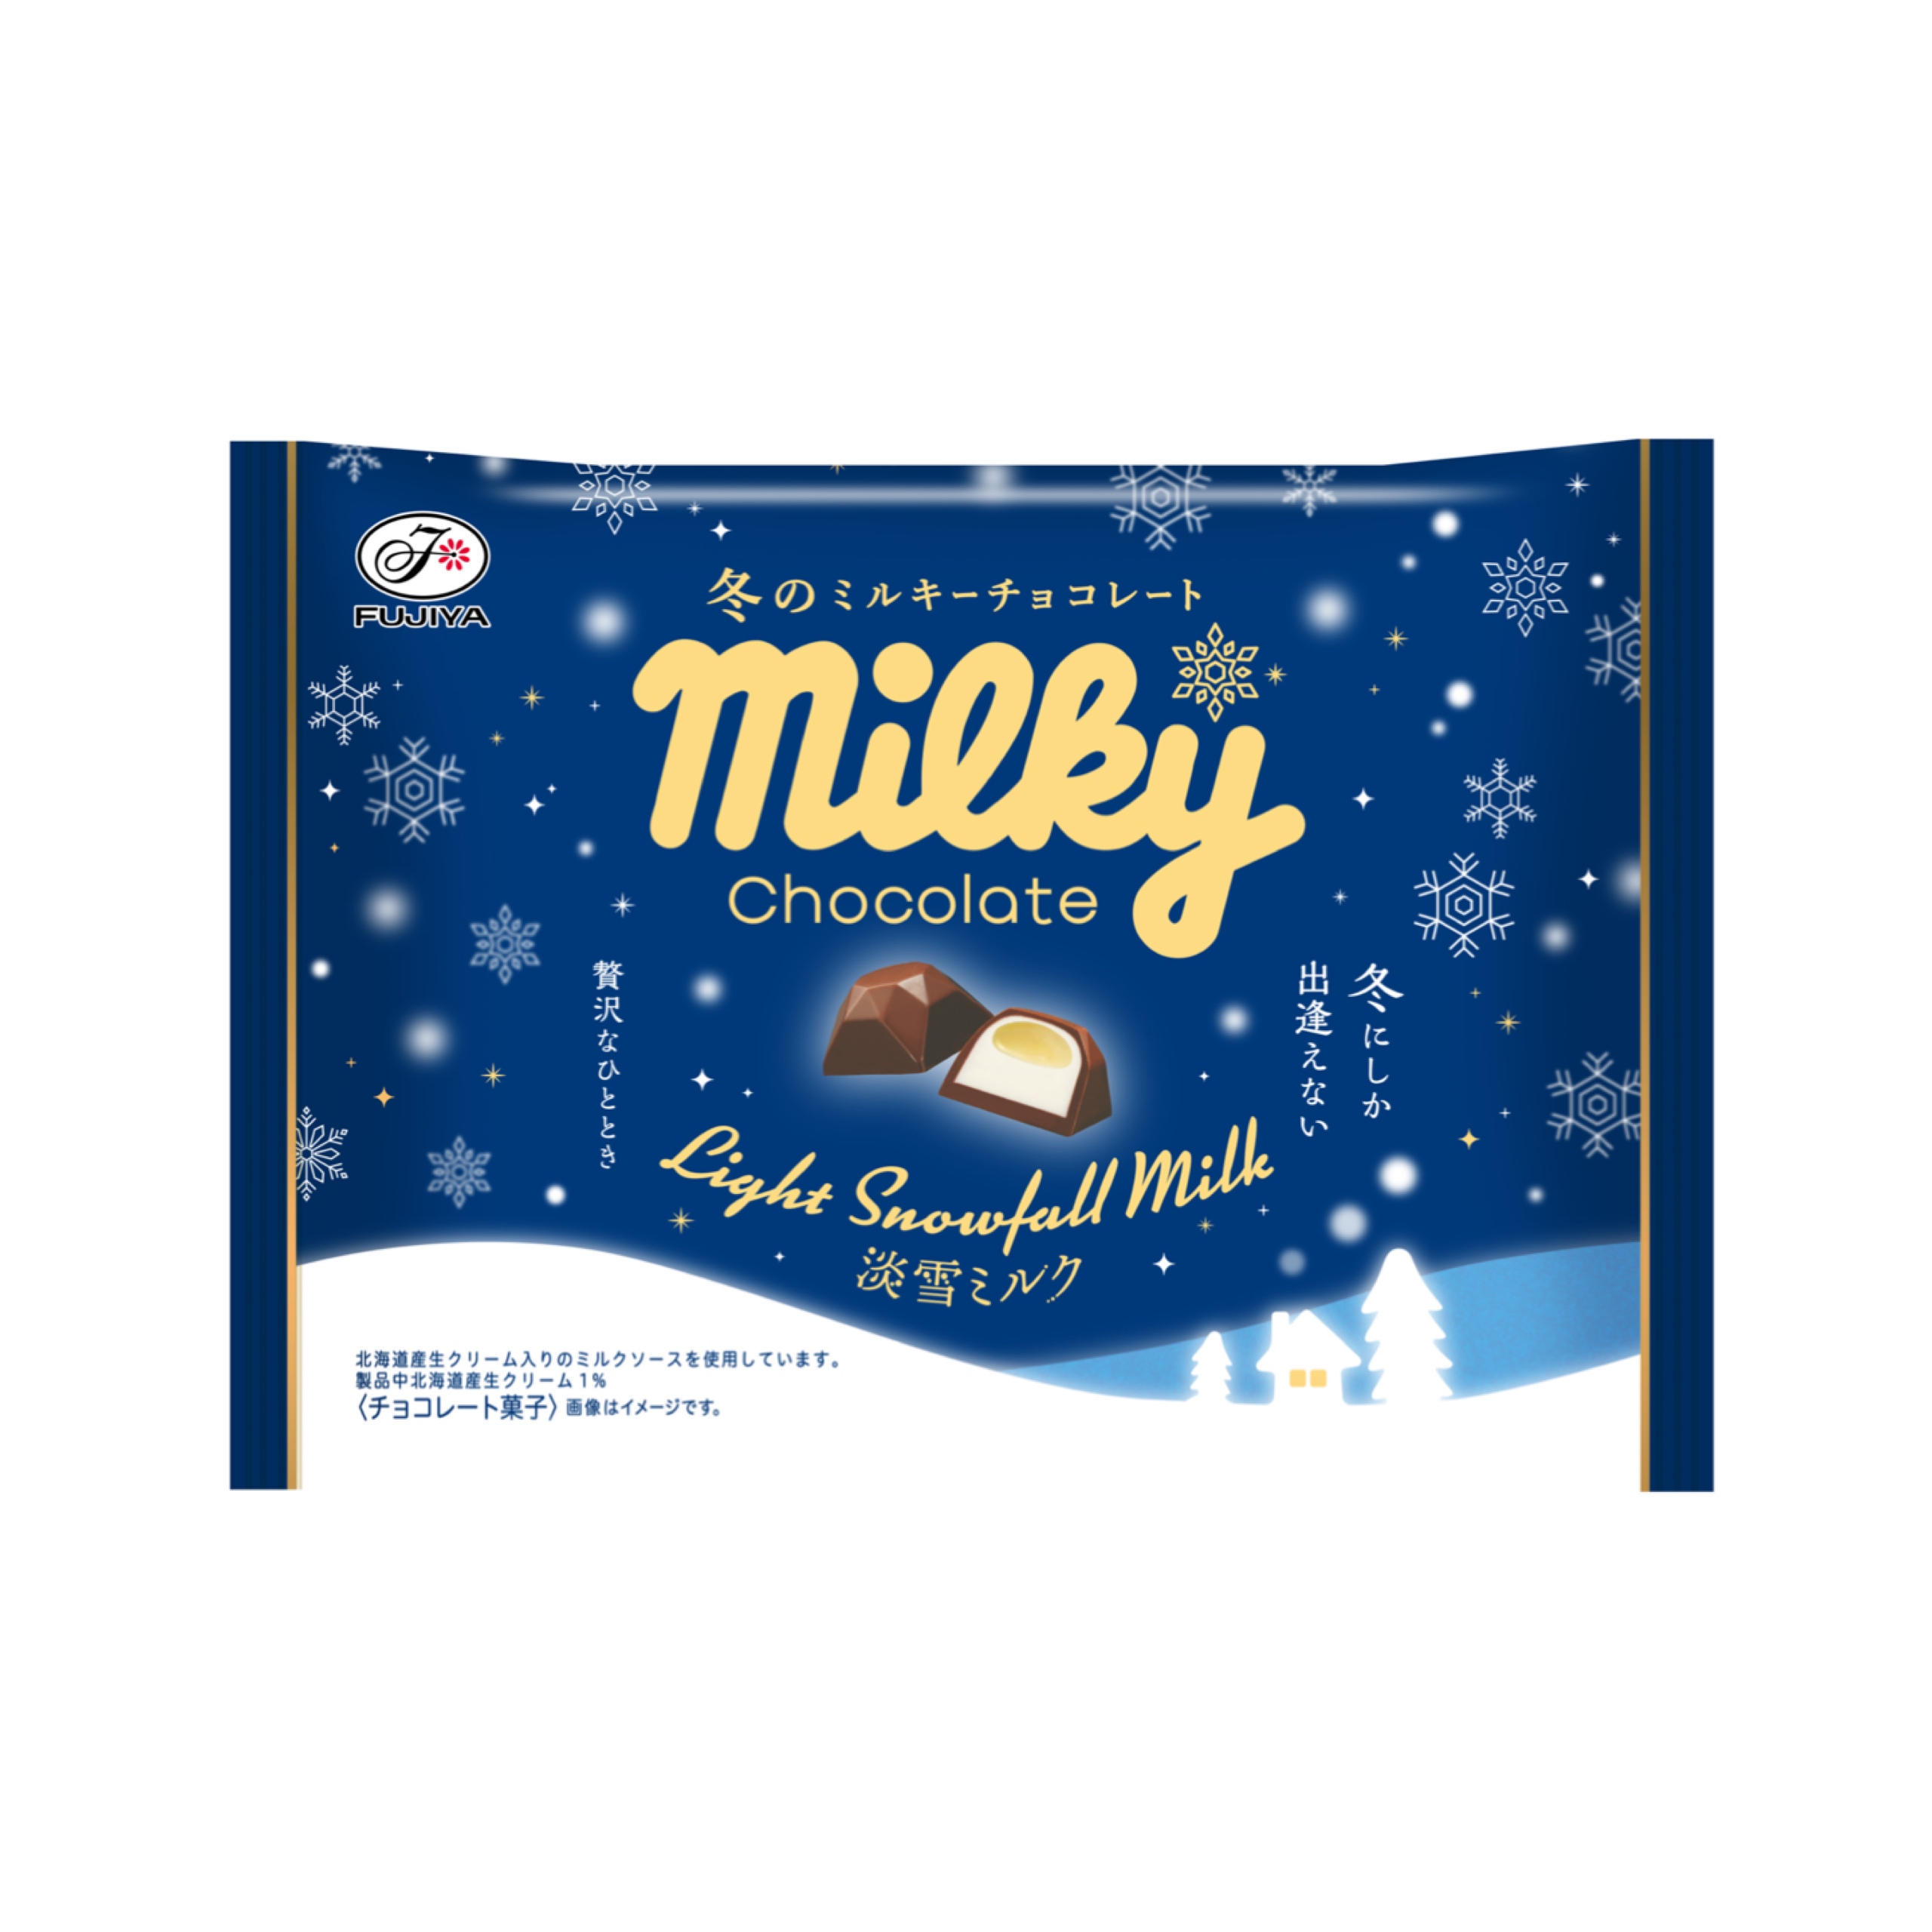 【新作お菓子】冬にしか出逢えない、淡雪のようなくちどけのミルキーチョコレート「冬のミルキーチョコレート（淡雪ミルク）袋」11月14日(火)より新発売⛄️💙❄️